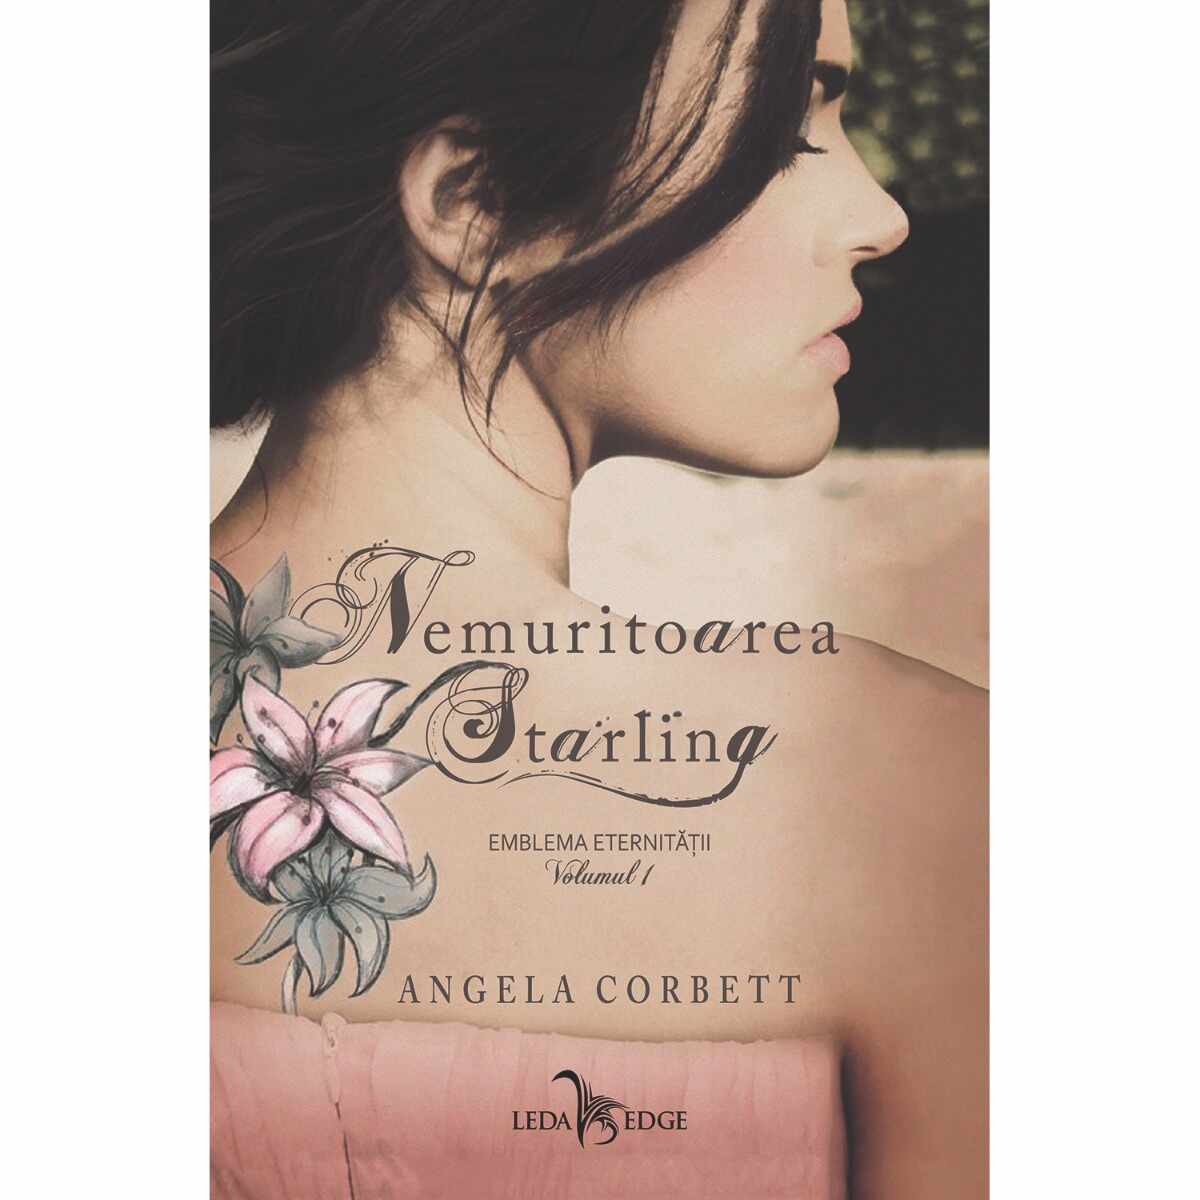 Carte Editura Corint, Nemuritoarea Starling vol.1 Emblema eternitatii, Angela Corbett